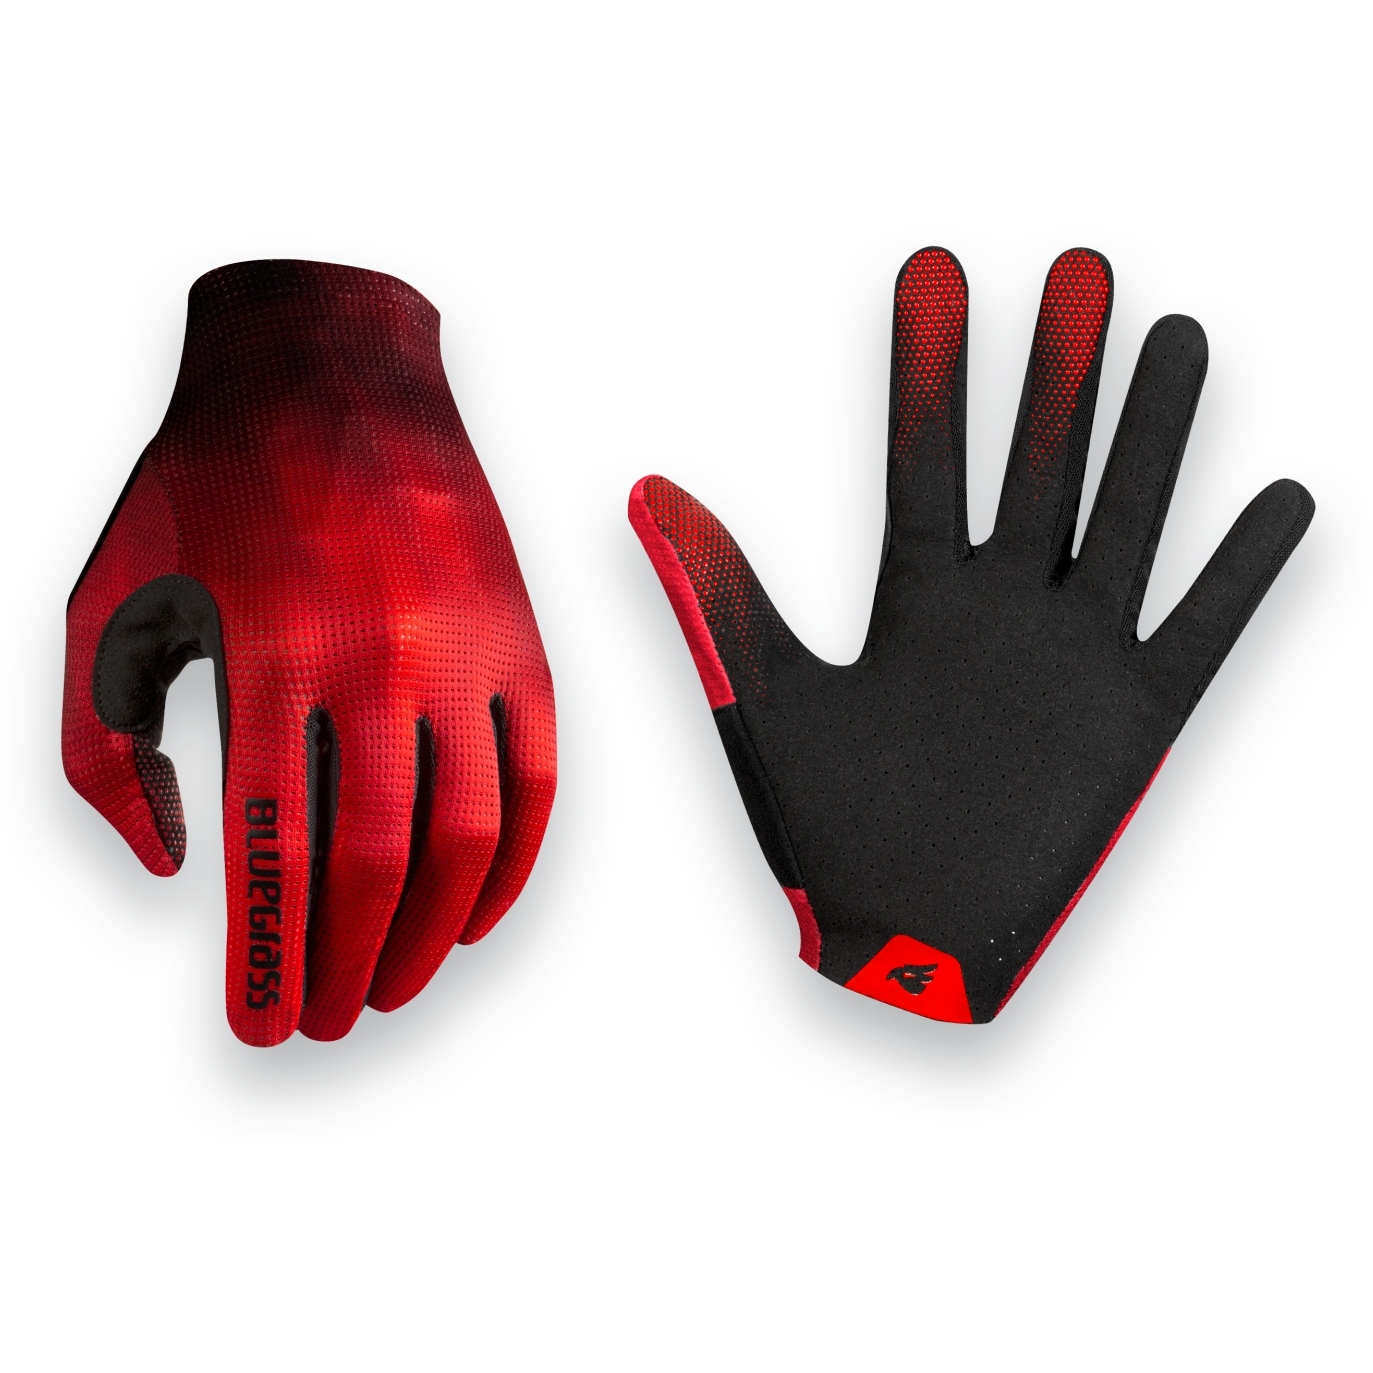 Productfoto van Bluegrass Vapor Lite Glove - red